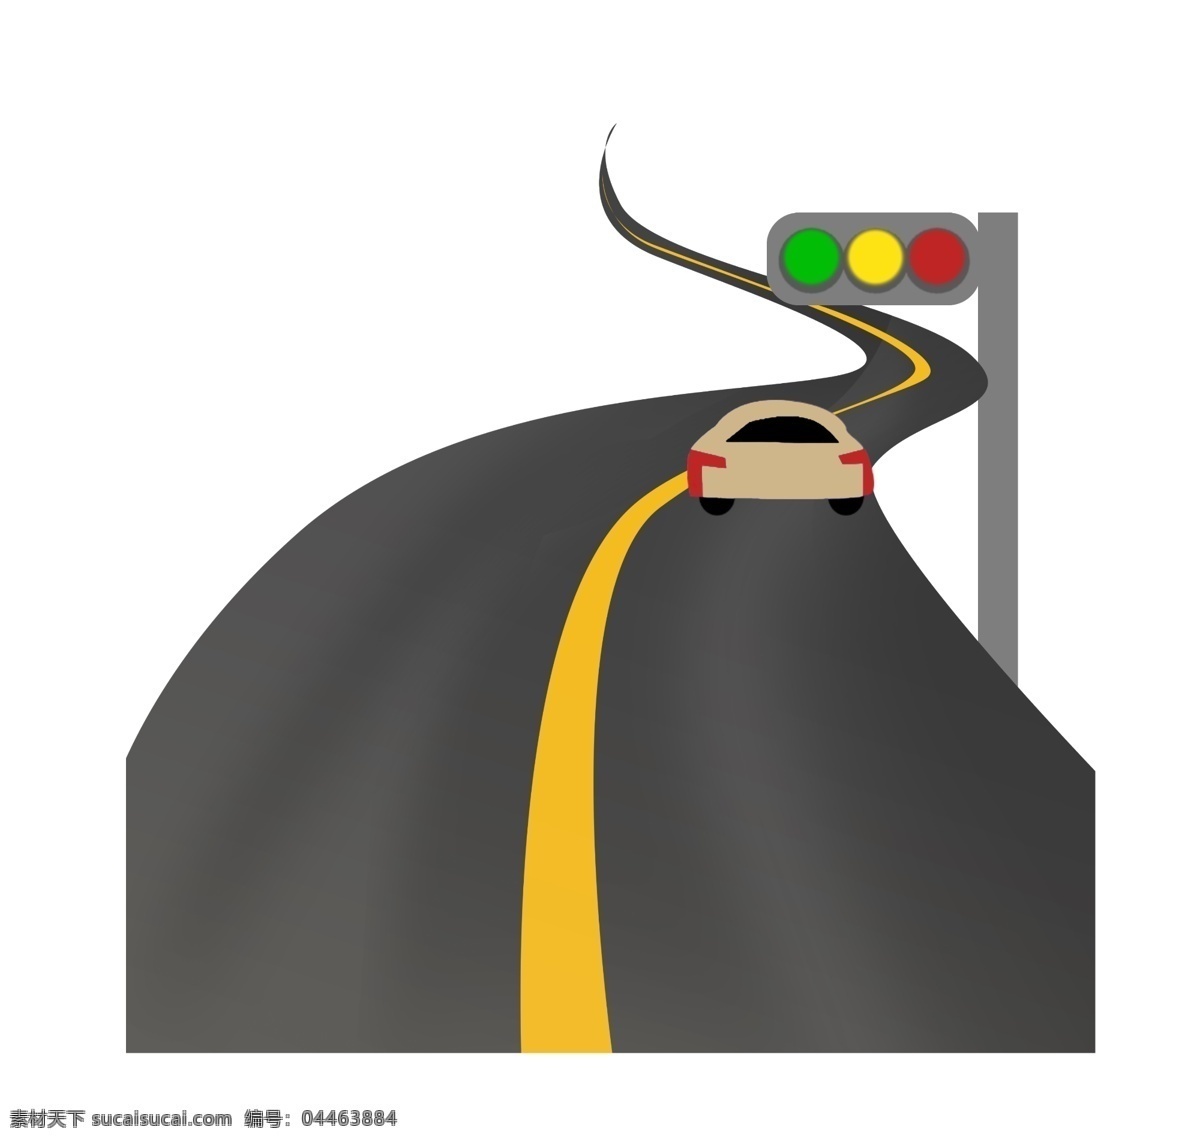 弯曲 柏油 公路 插图 交通信号灯 土黄色的汽车 黄色分隔线 柏油马路 卡通马路图 弯曲的公路